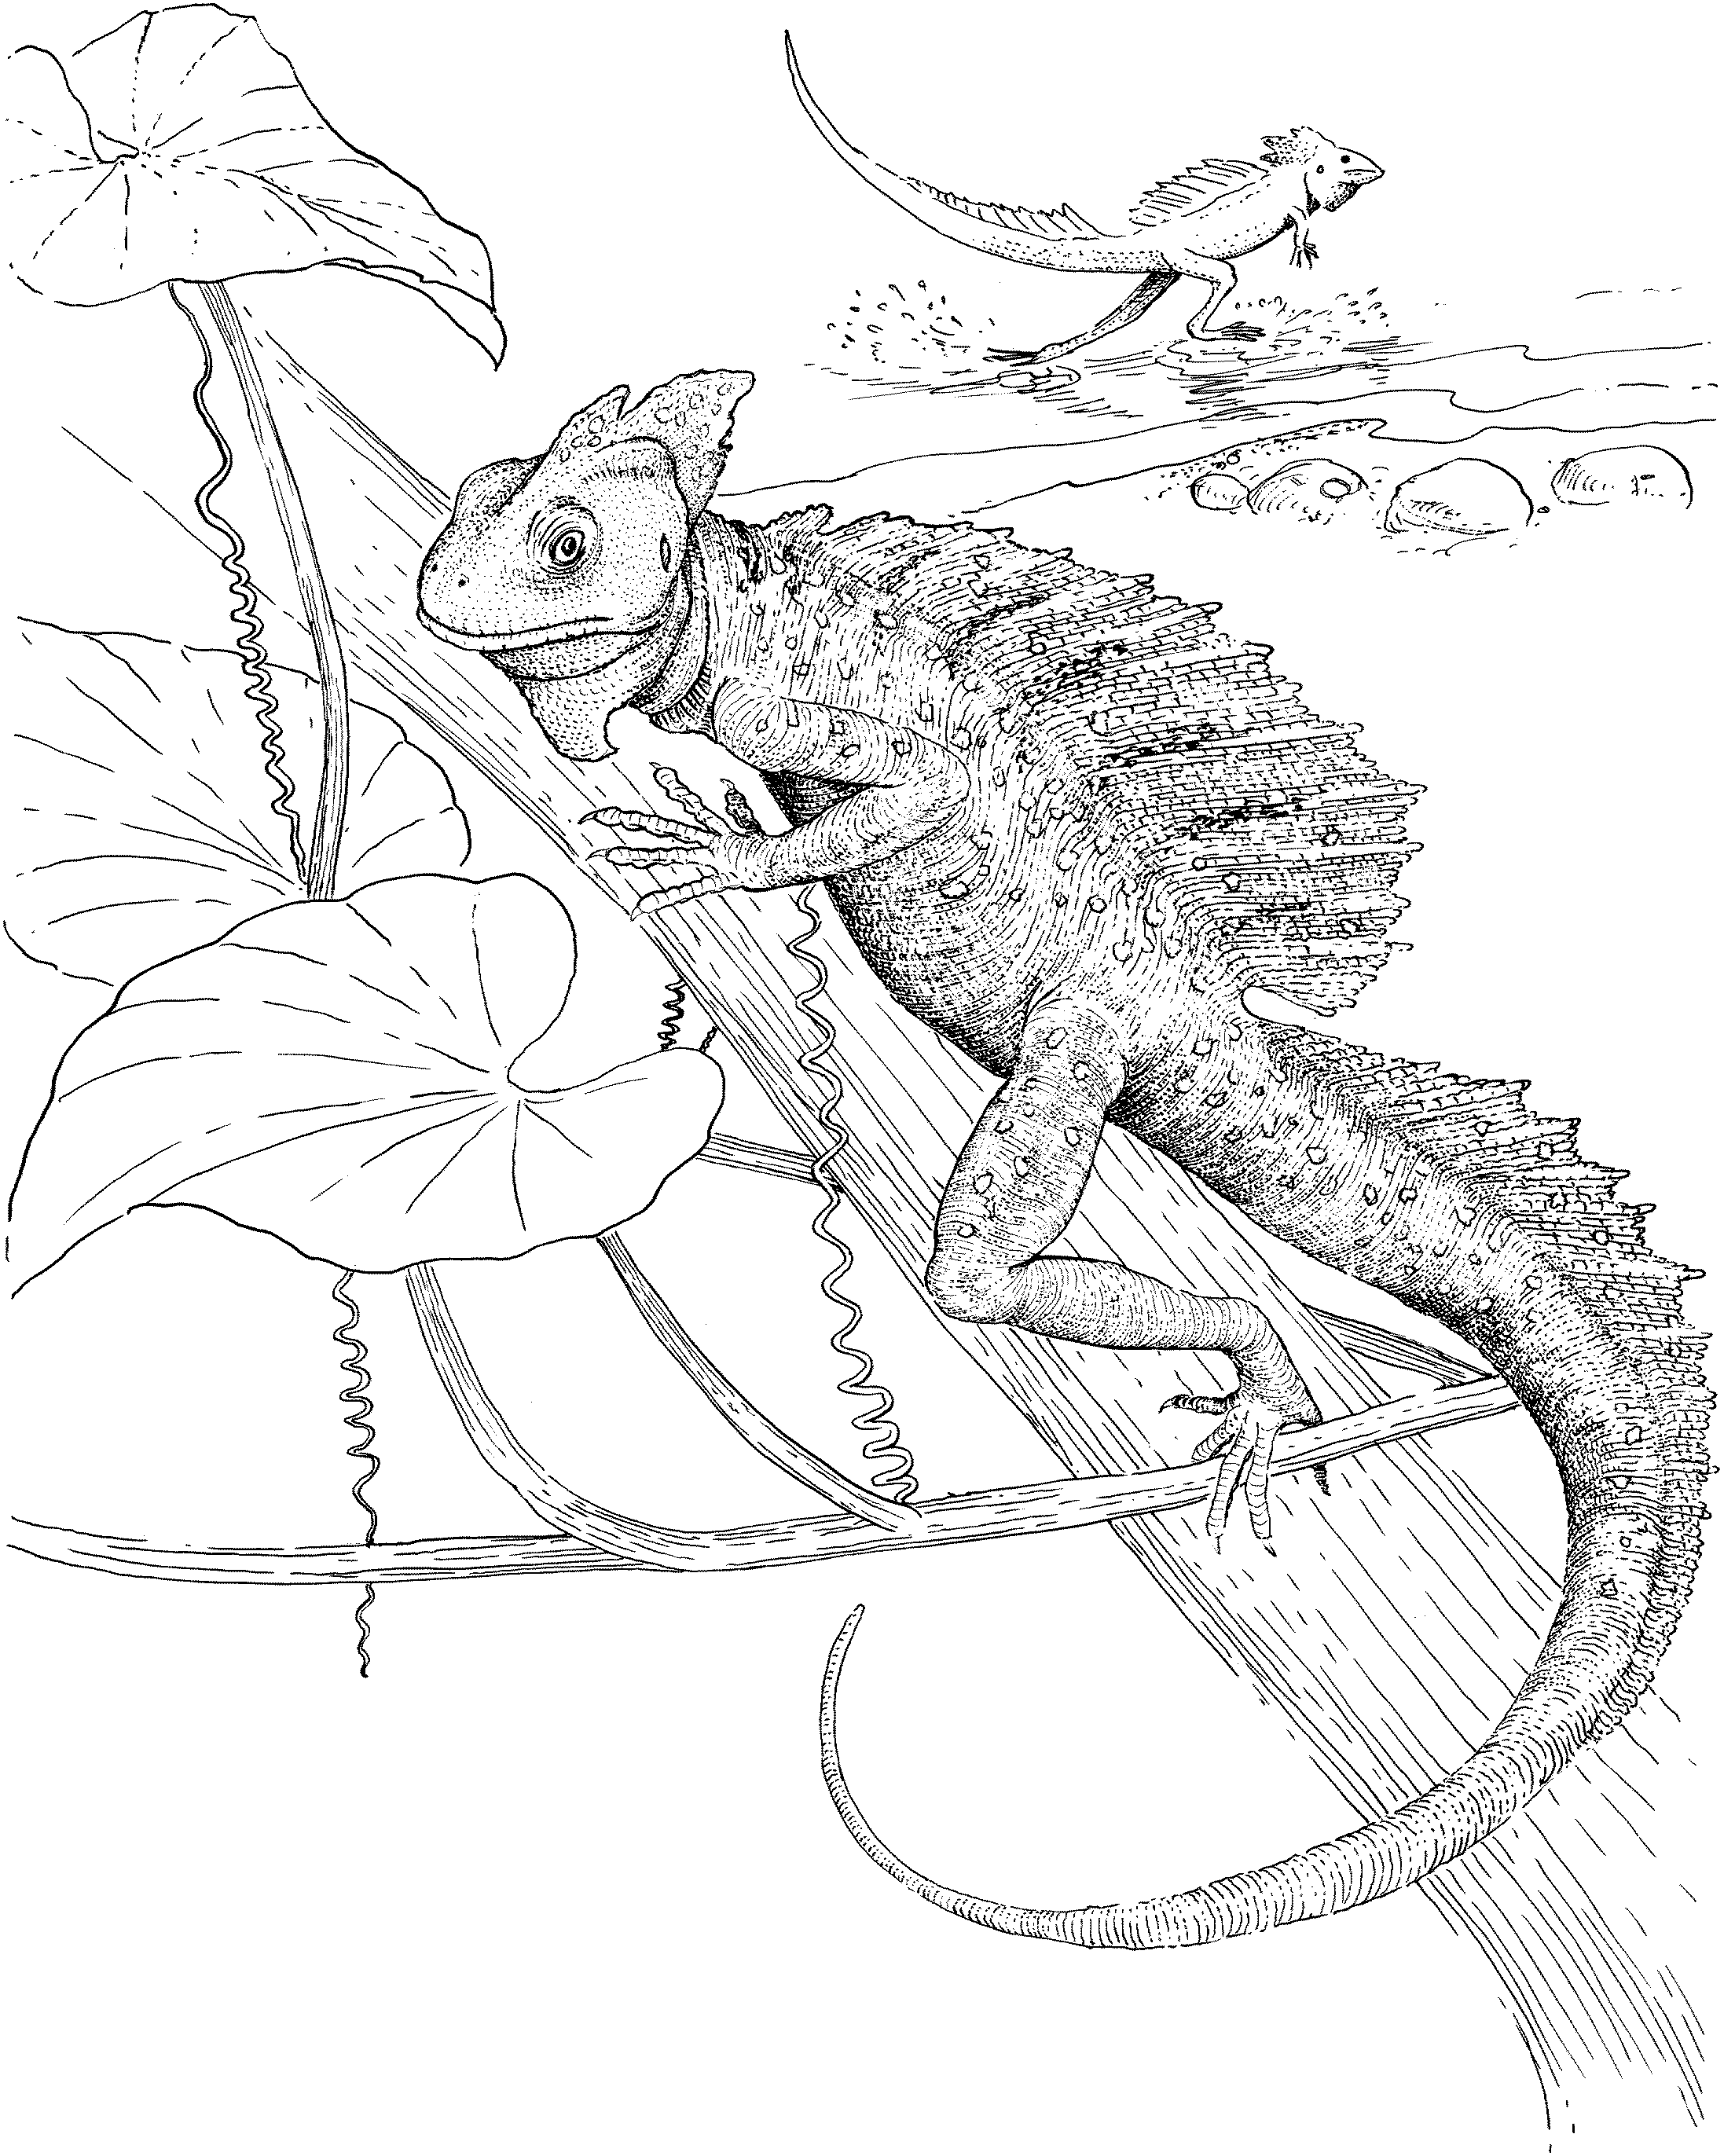 Lizard Coloring Pages - Kidsuki